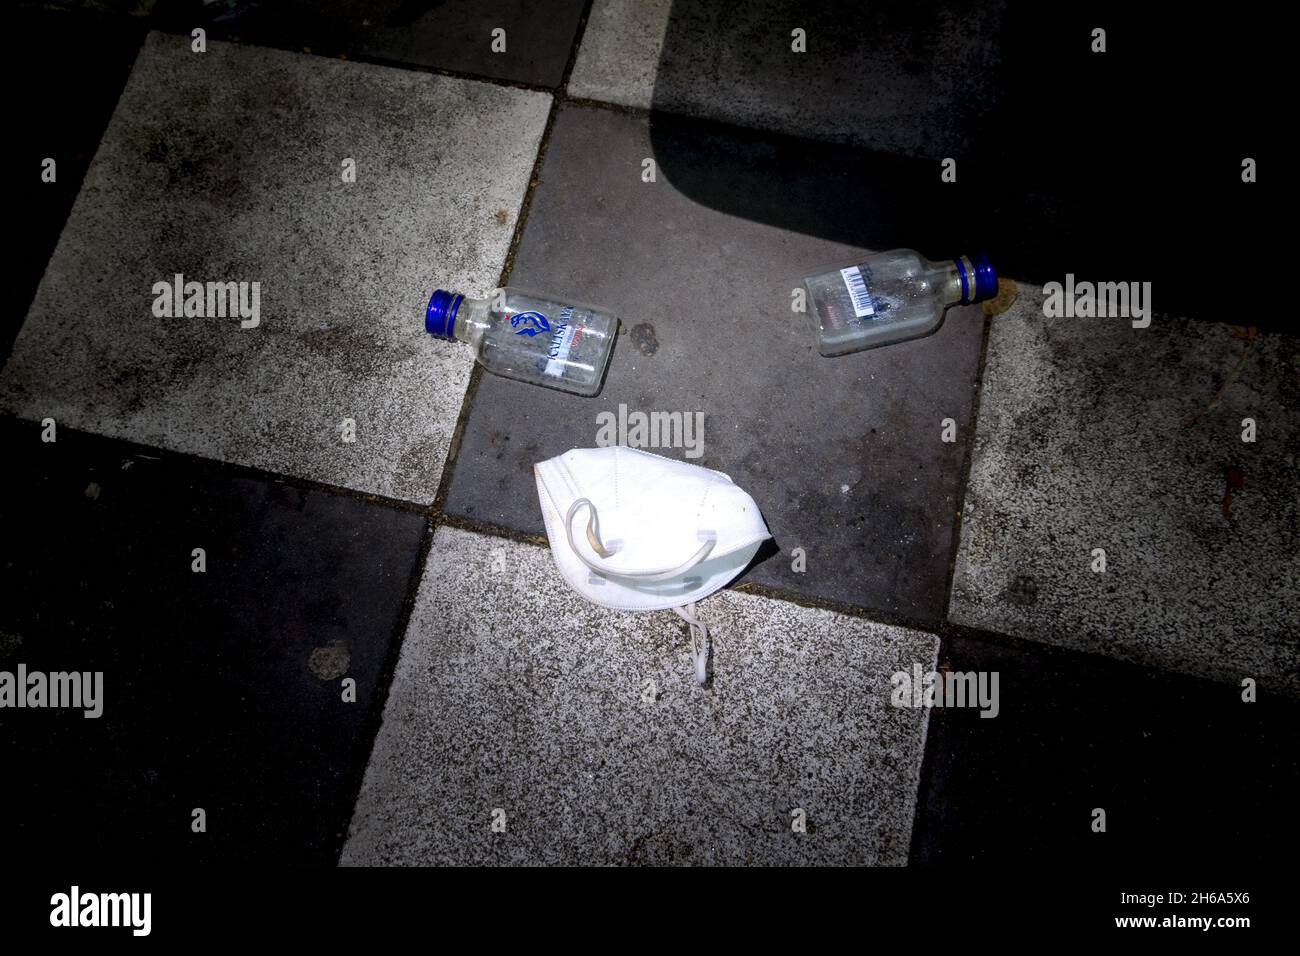 Zwei Wodkaflaschen auf dem Boden einer Bushaltestelle und eine weggeworfene FFP2 Maske. Stock Photo